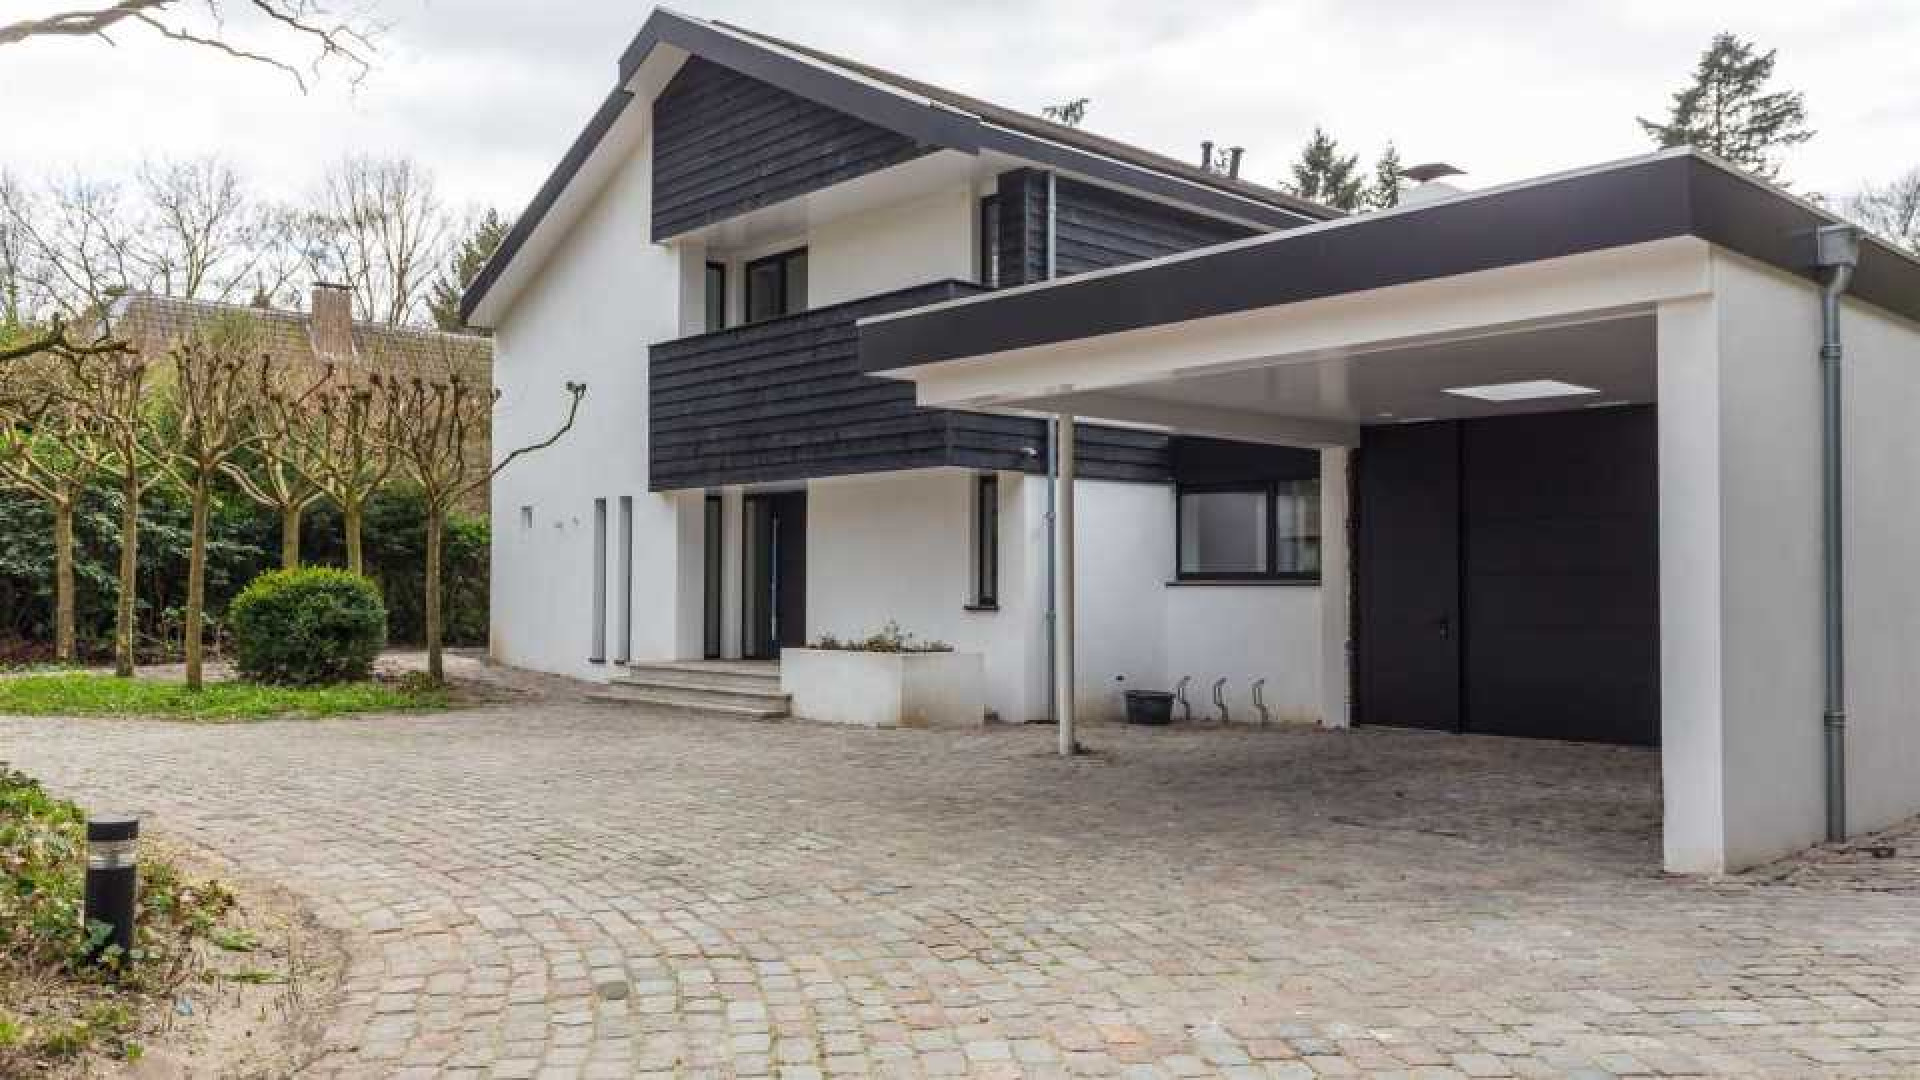 Villa waar Koen Everink zou gaan wonen verkocht. Zie foto's 2